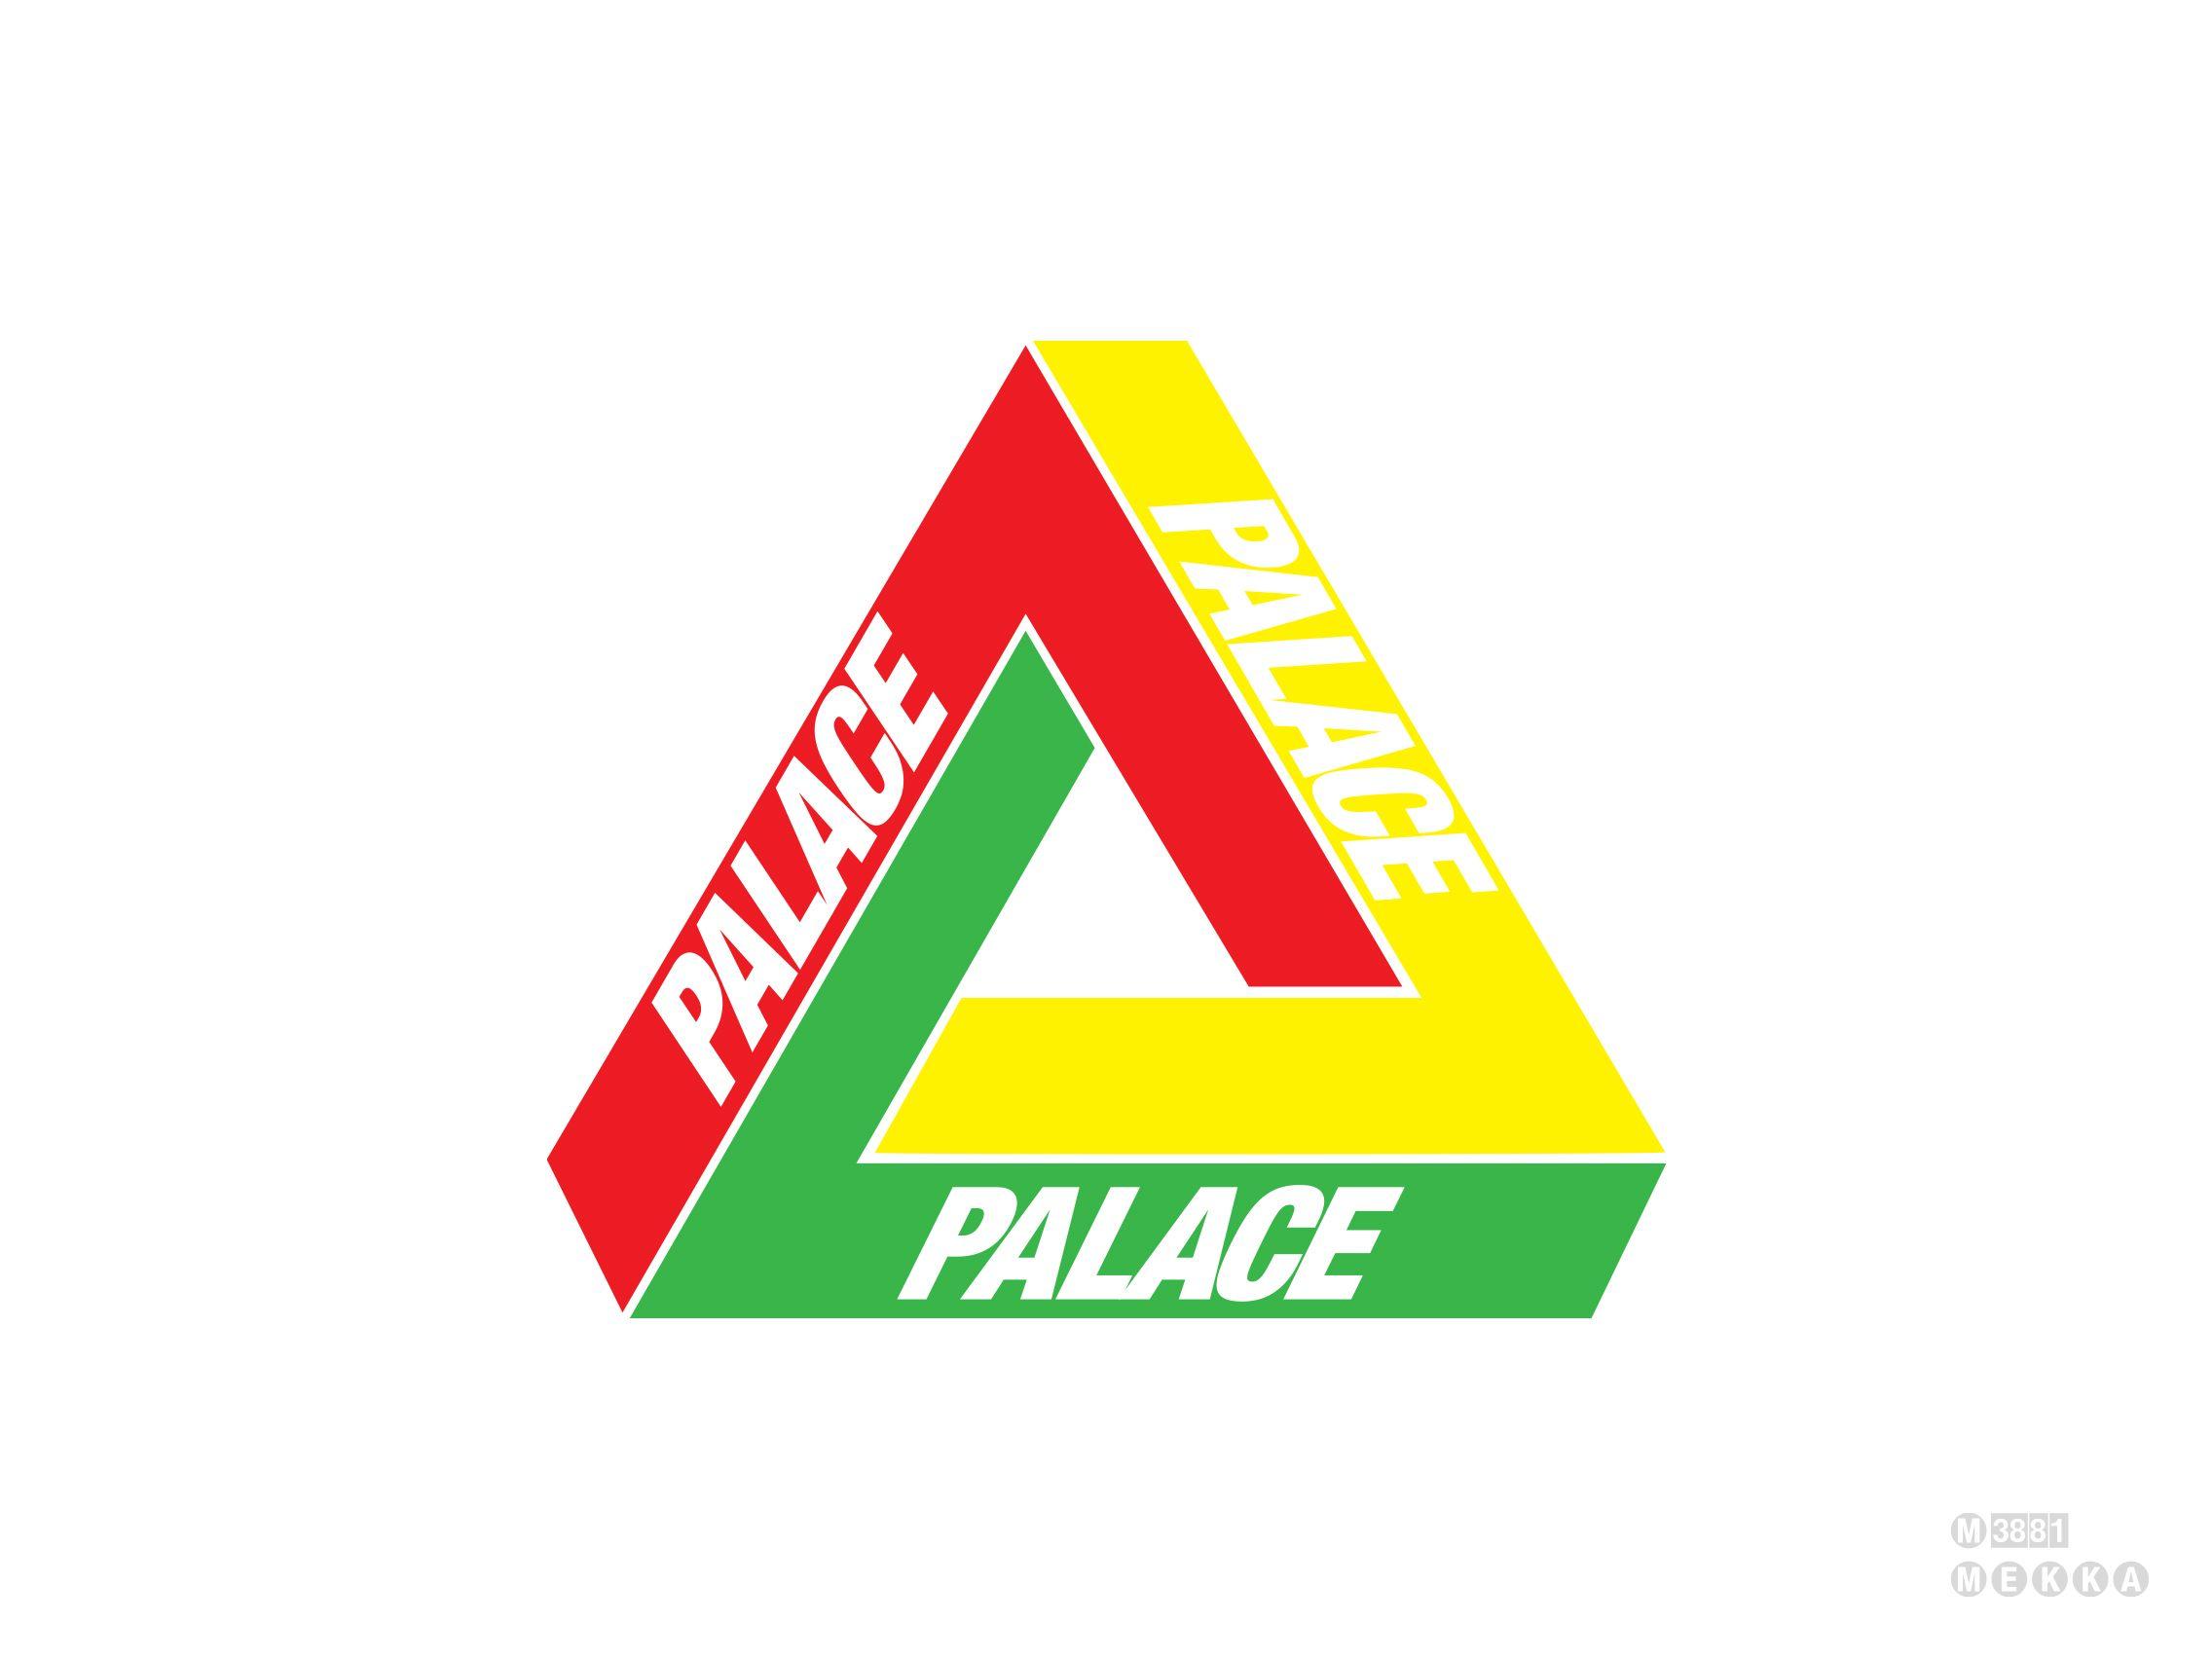 Palace Logos